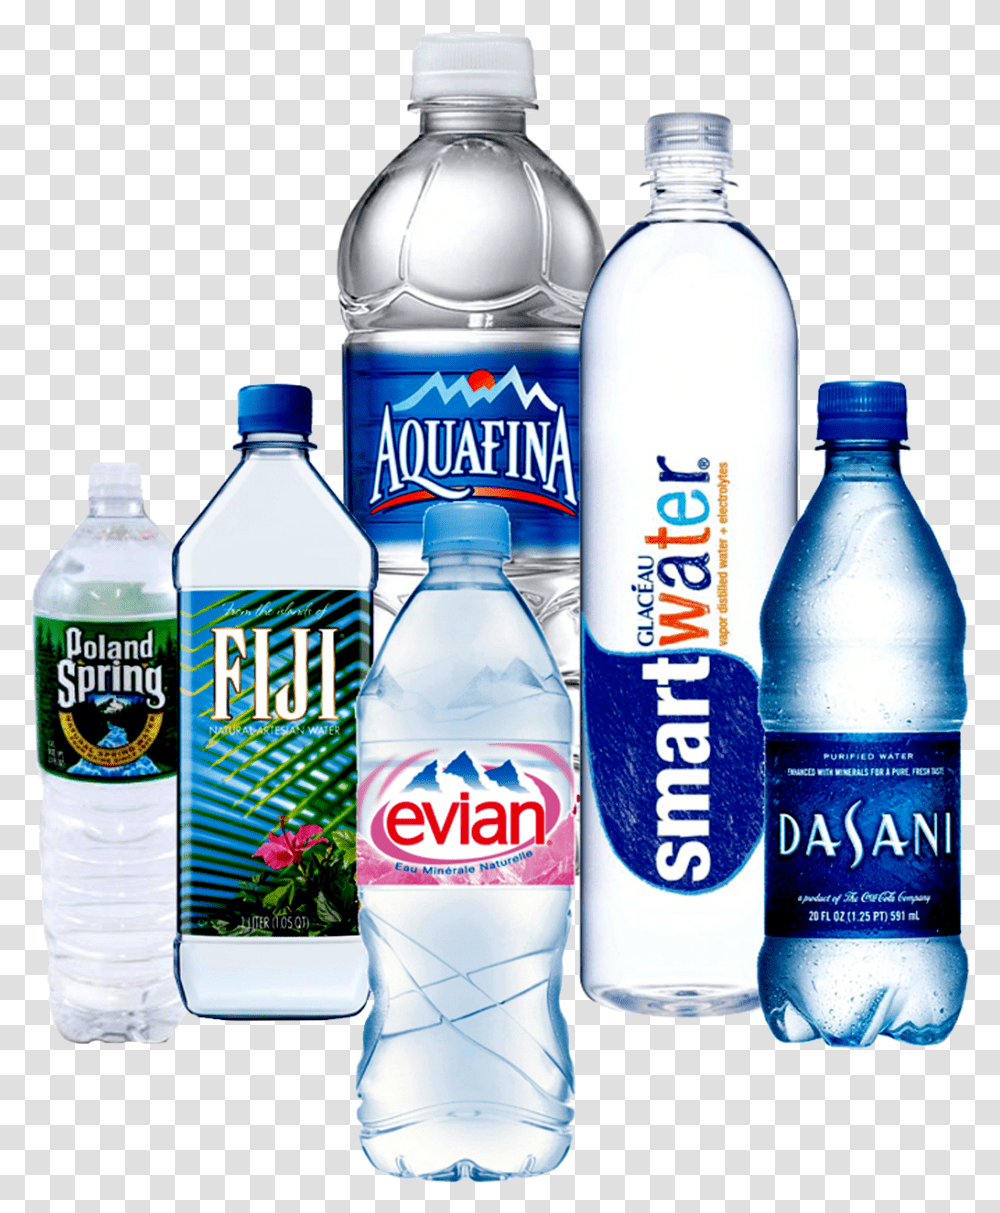 Aquafina Big Water Bottle Brands, Mineral Water, Beverage, Drink, Shaker Transparent Png